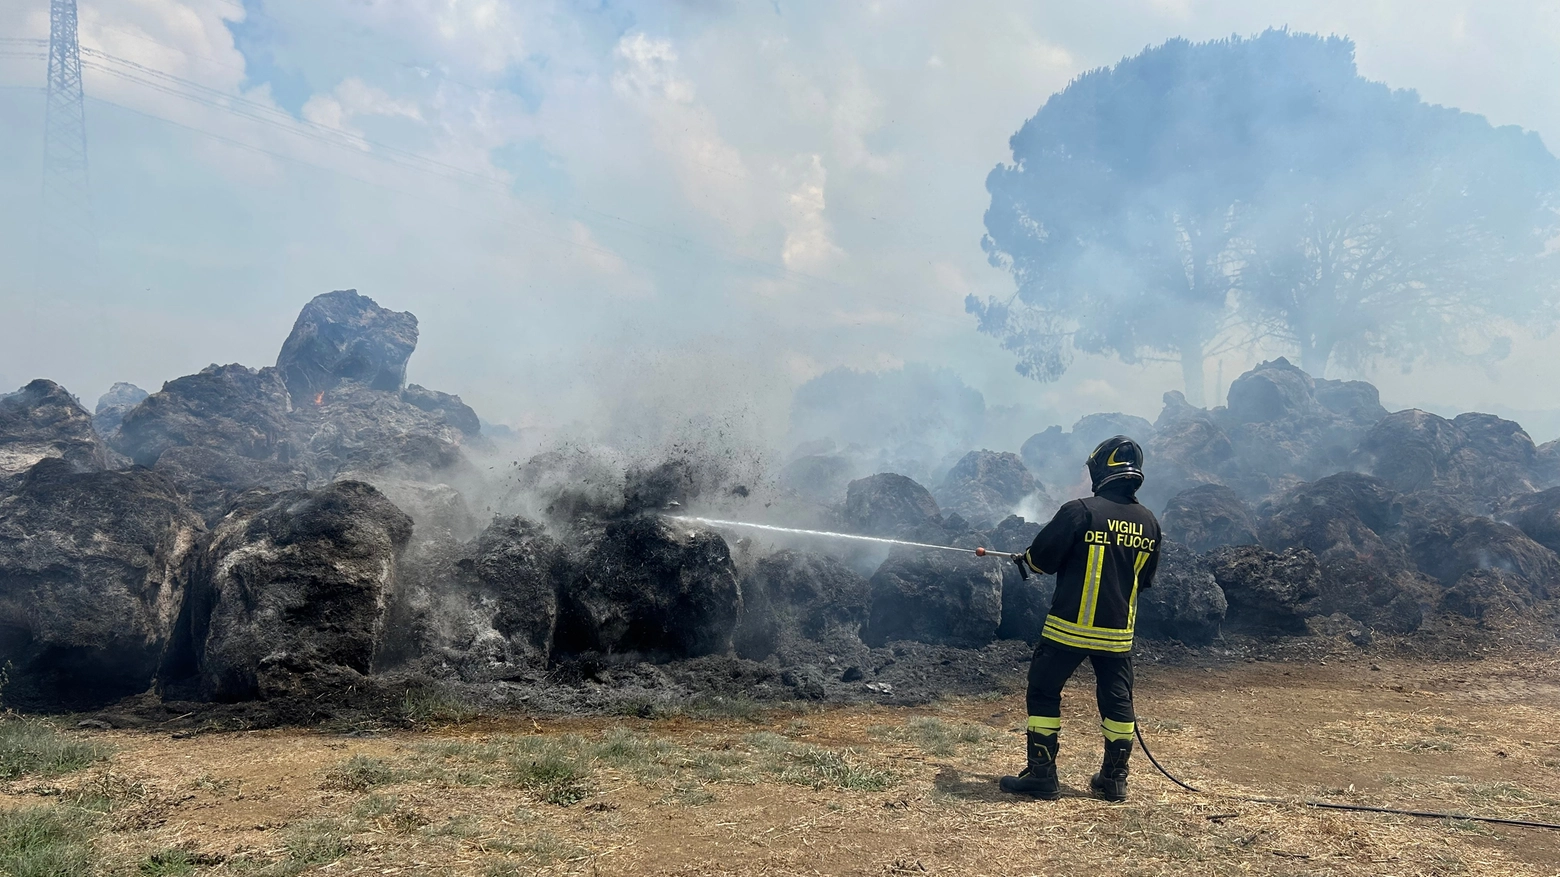 Vigili del fuoco ancora al lavoro: maxi incendio di rotoballe a Montelabbate, in provincia di Pesaro Urbino